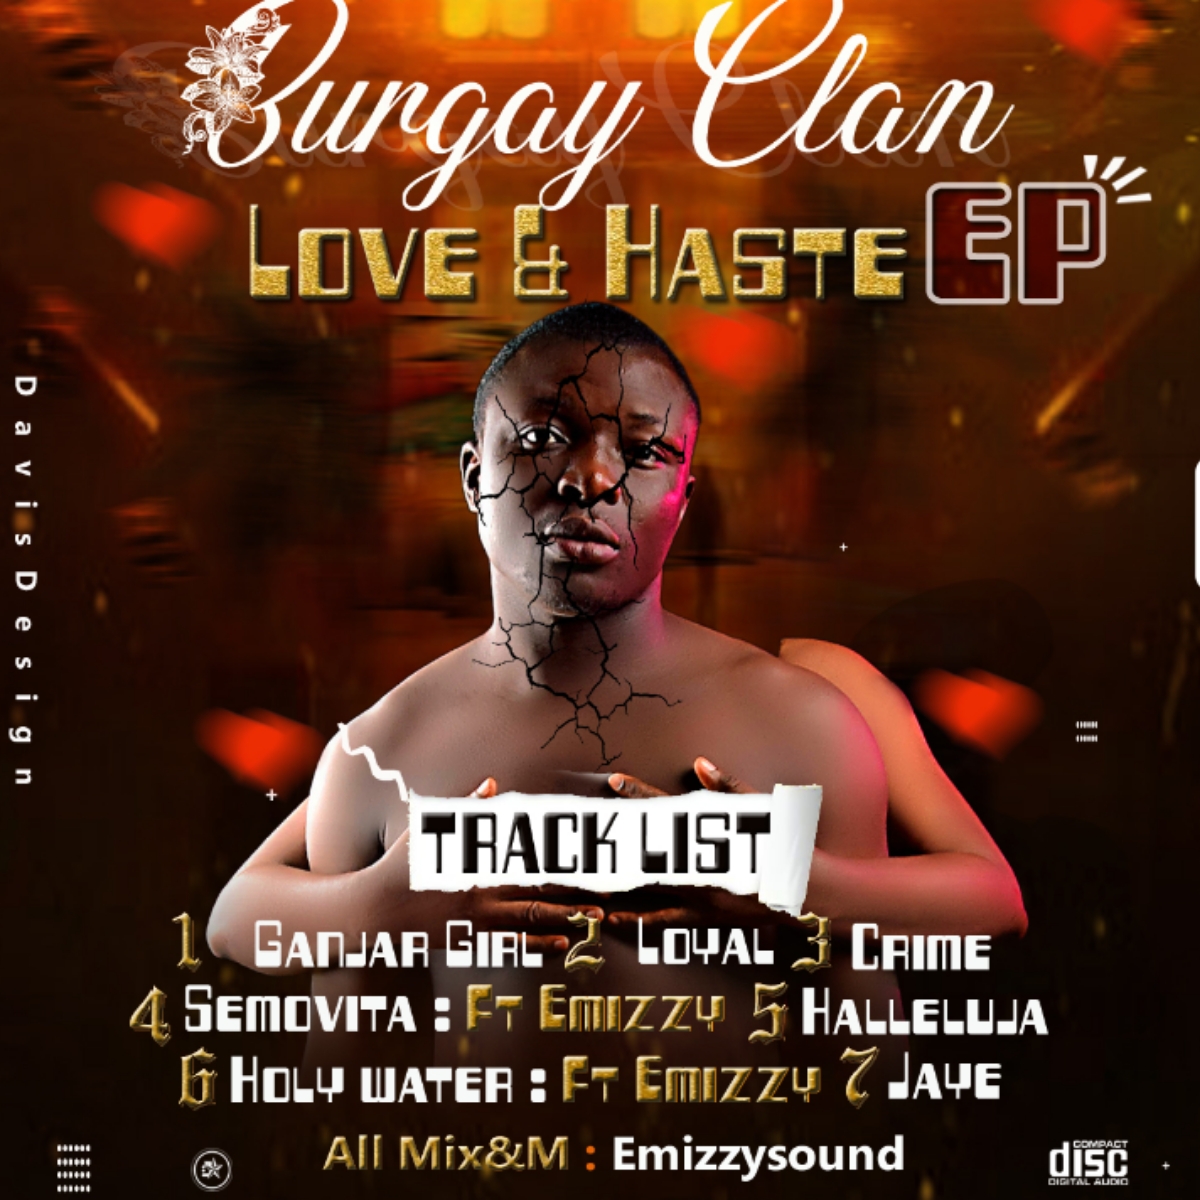 Burgay Clan -"Love & Haste" EP featuring Emizzy 17